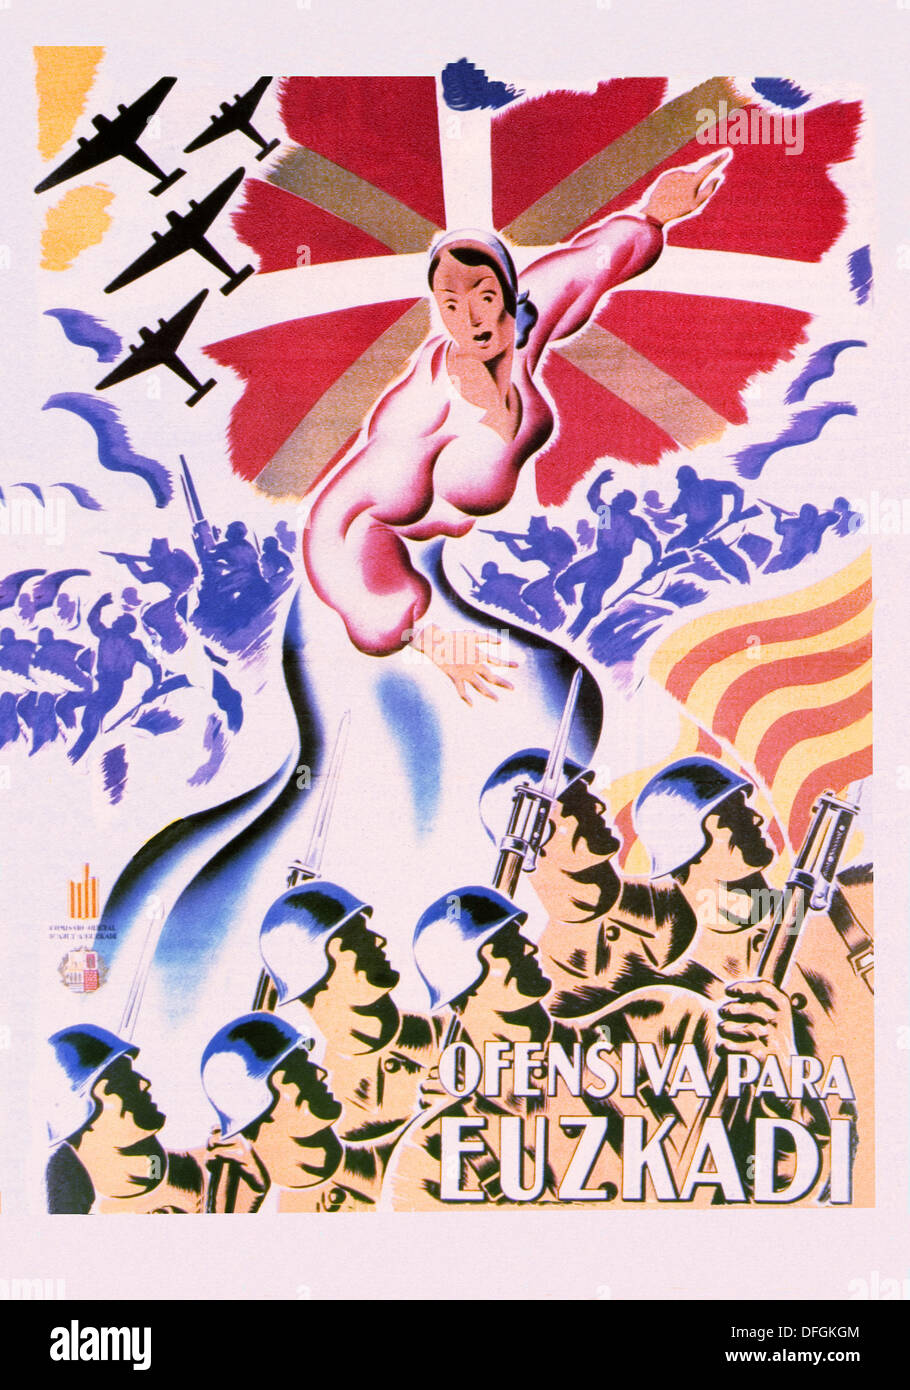 Guerra civil española (1936-1939): Ofensiva pará Euzkadi (ofensivos para el País Vasco), el Republicano poster Foto de stock